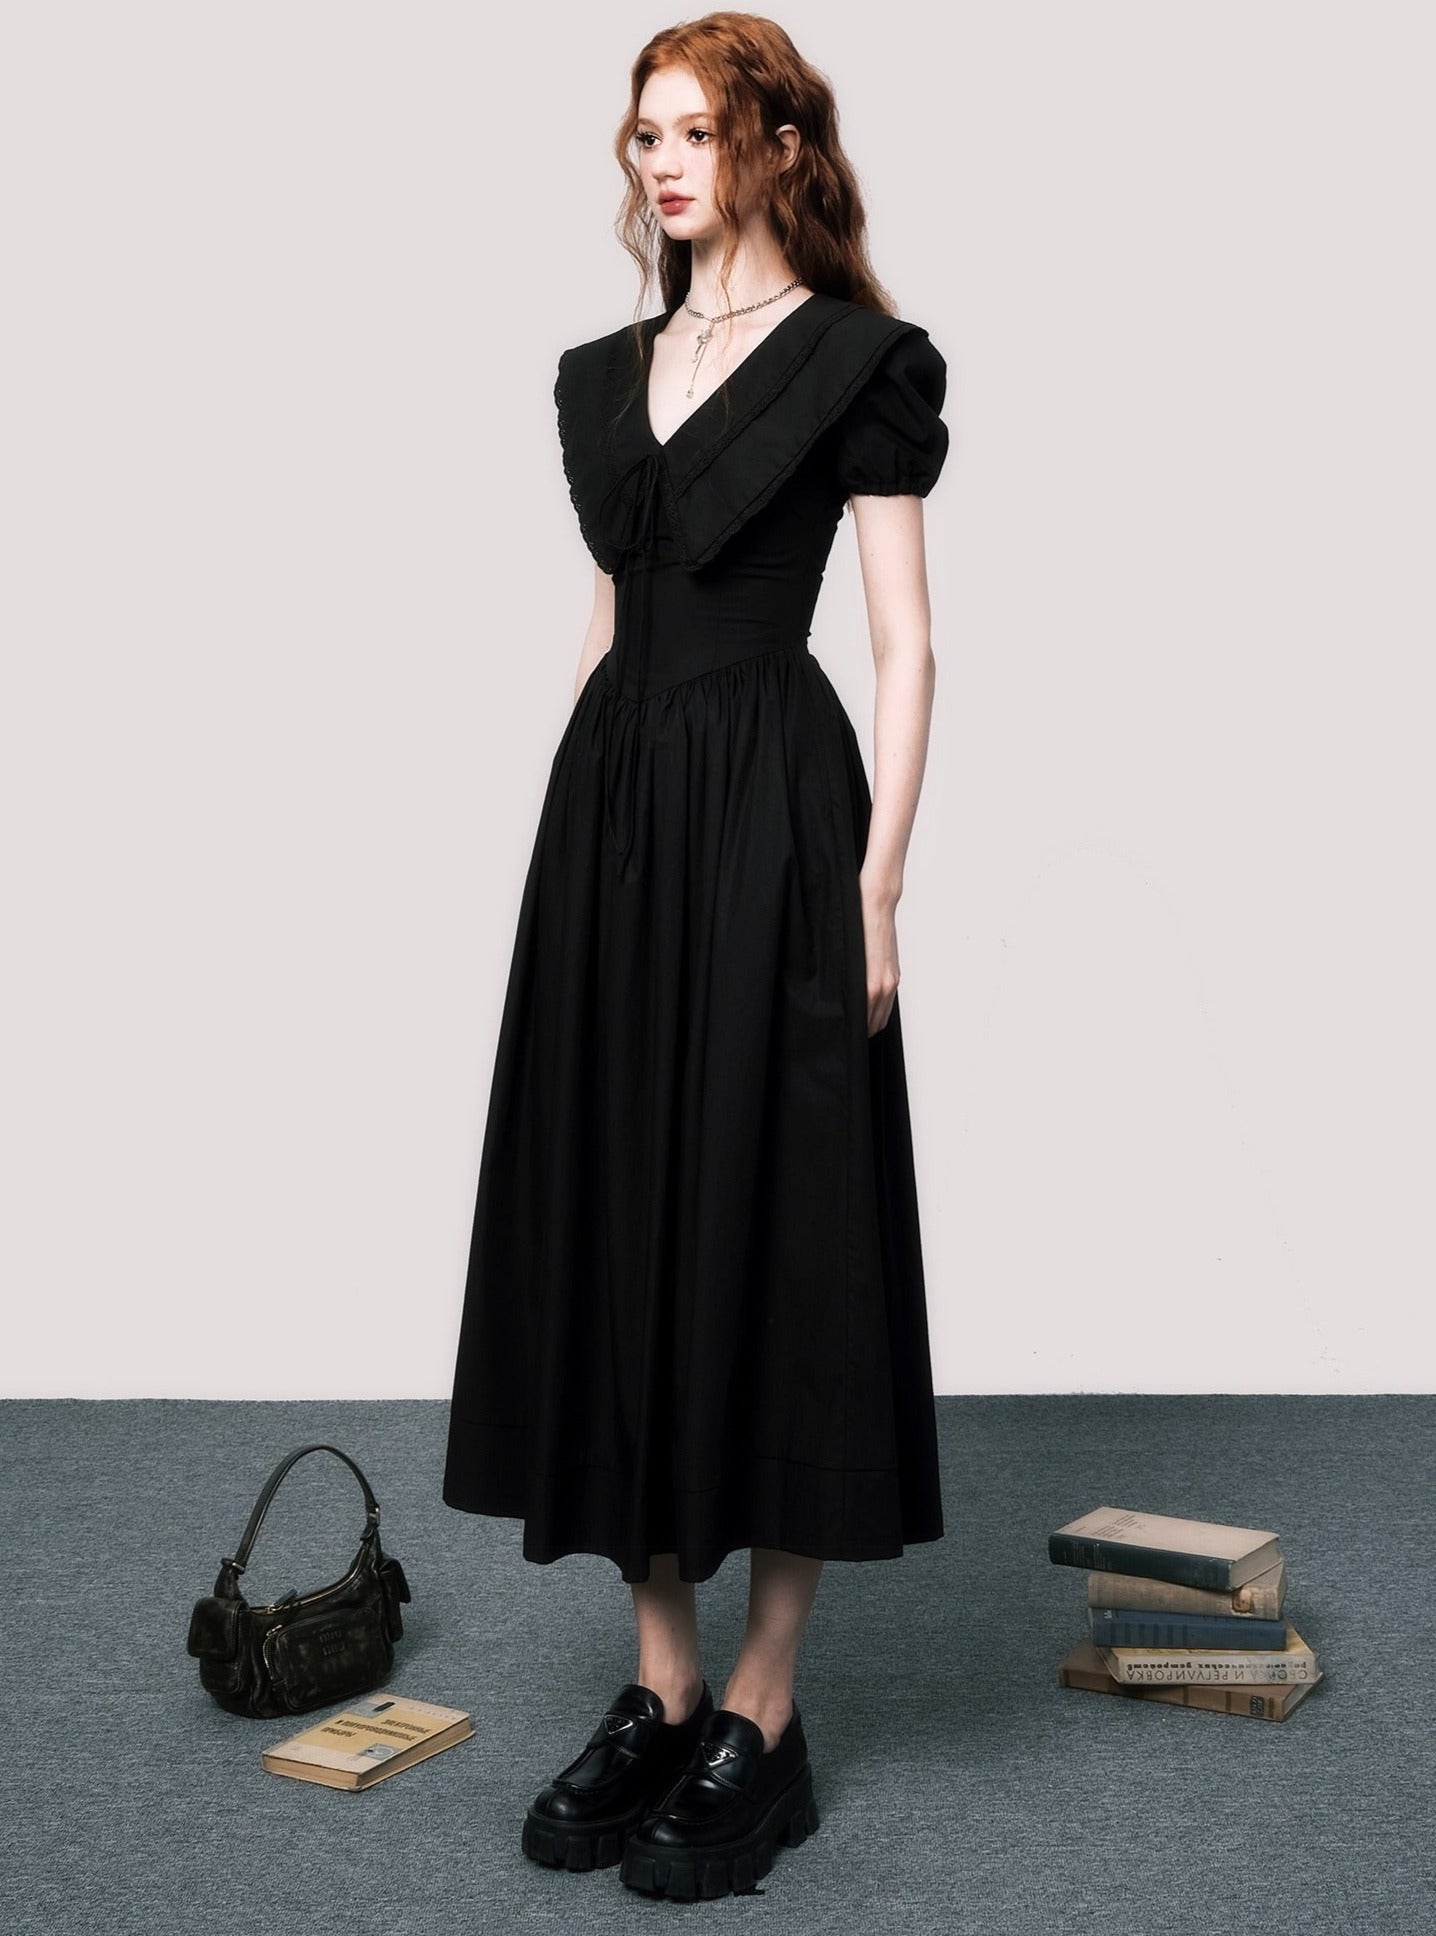 V-Neck-Puffärmel schwarzes Kleid